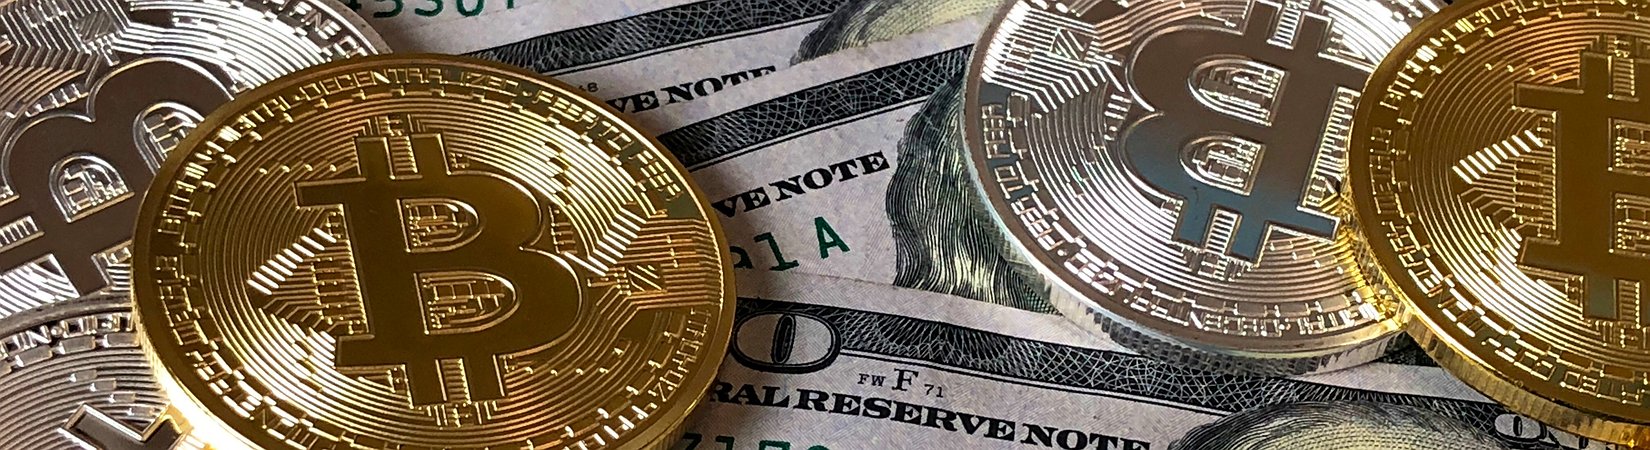 Манки биткоин big bet in bitcoin cash